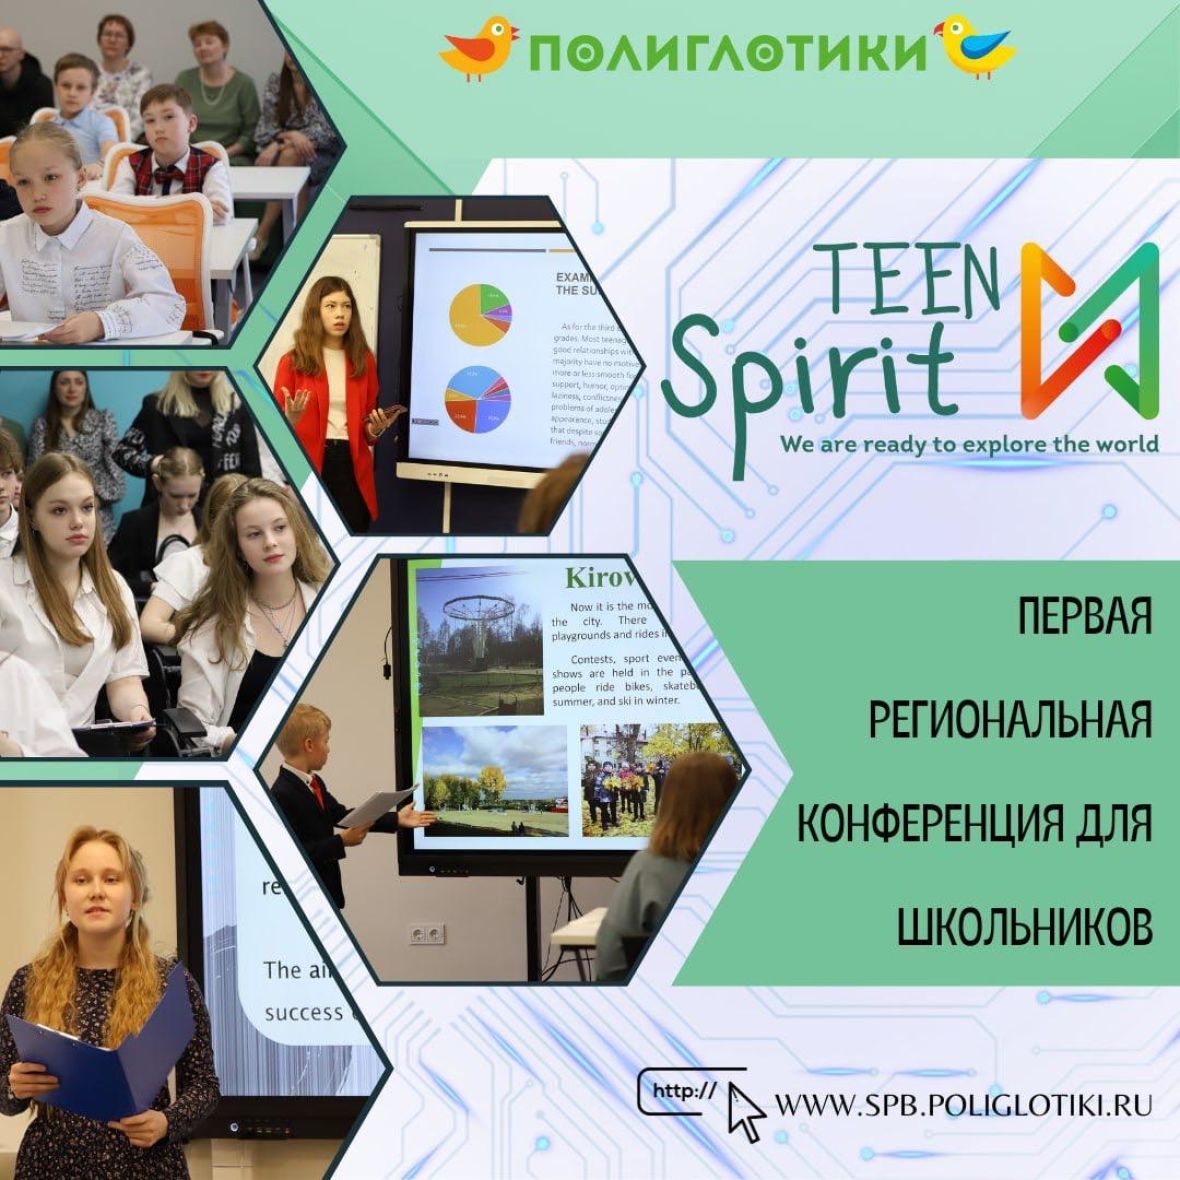 21 апреля 2024 г. в Санкт-Петербурге пройдет Первая очная Конференция для школьников "TEEN SPIRIT: We are ready to explore the world". 